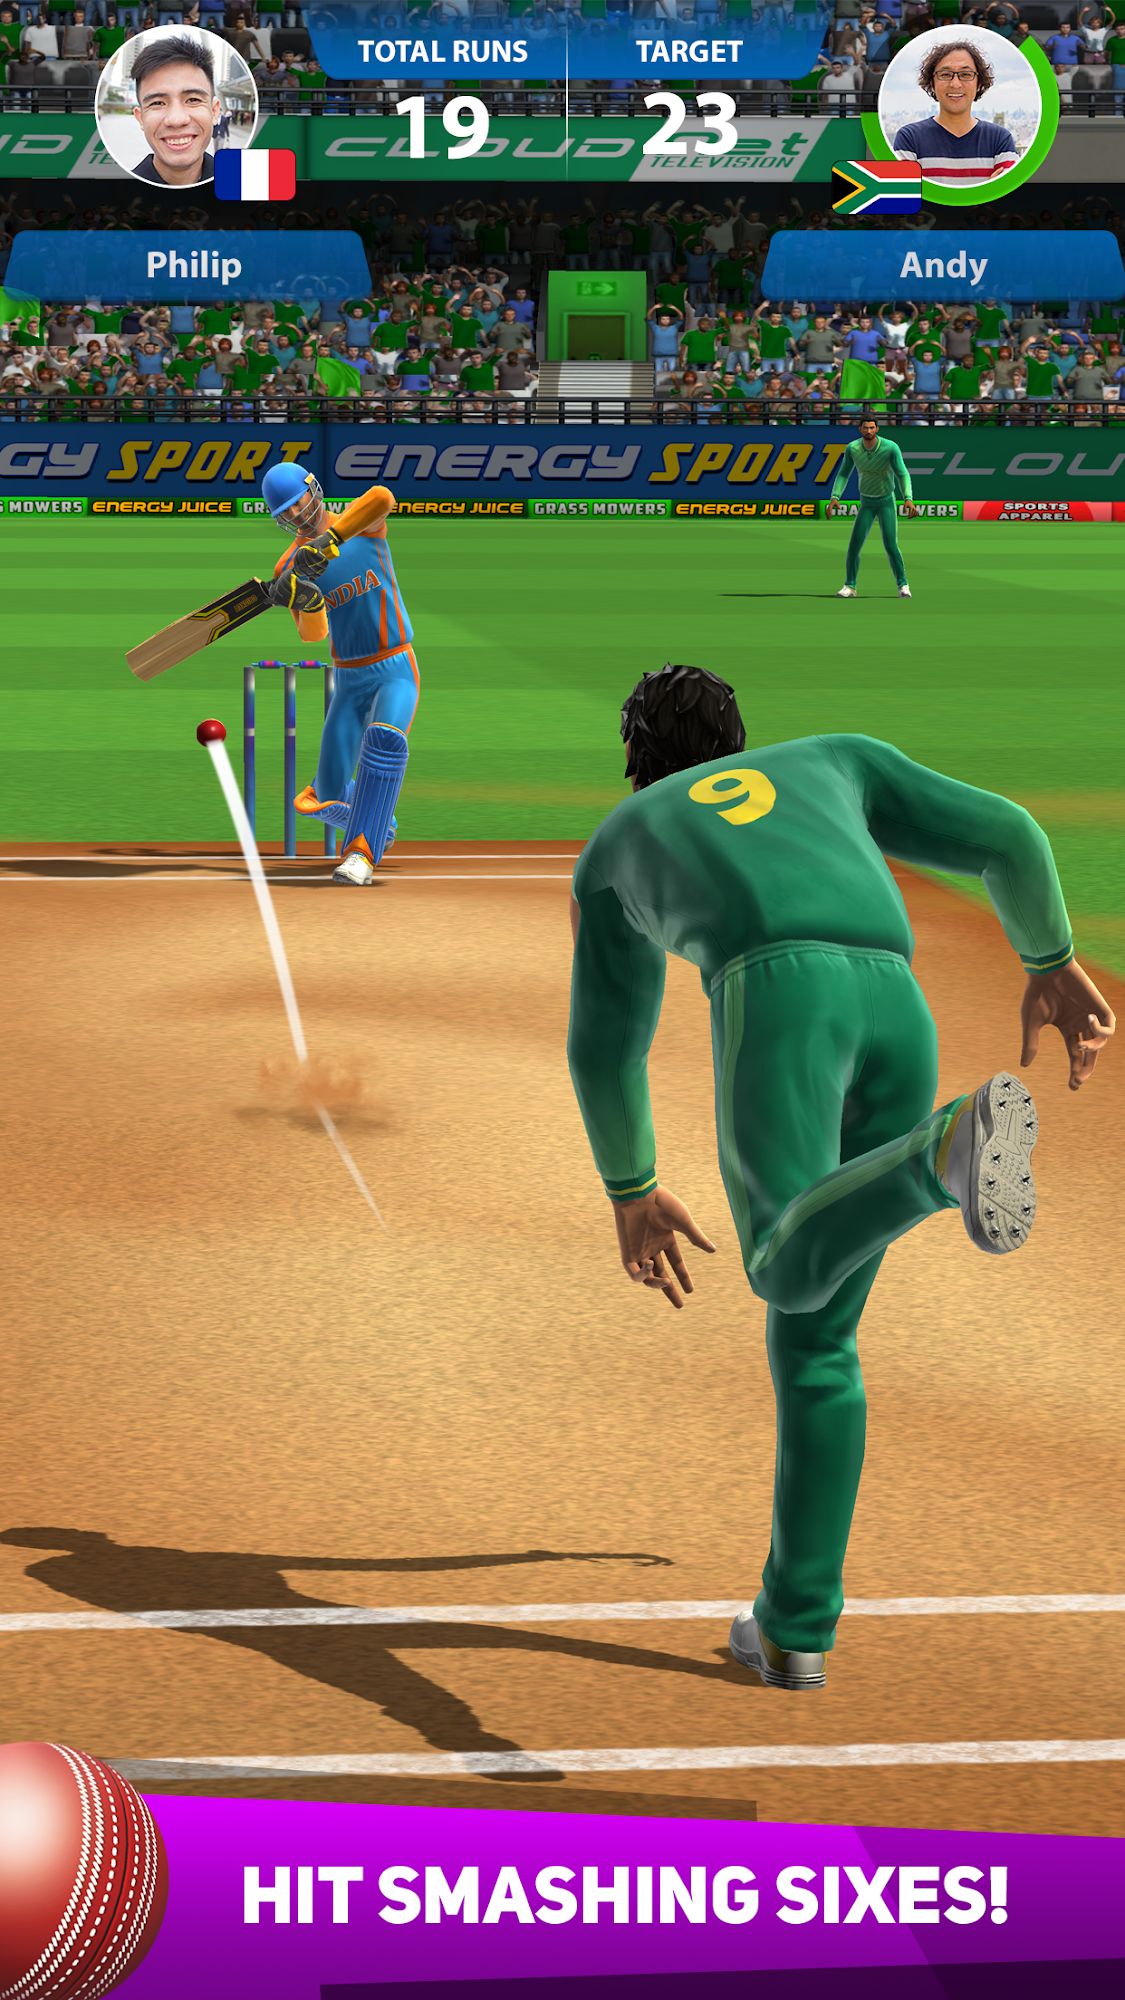 Cricket League captura de pantalla 1